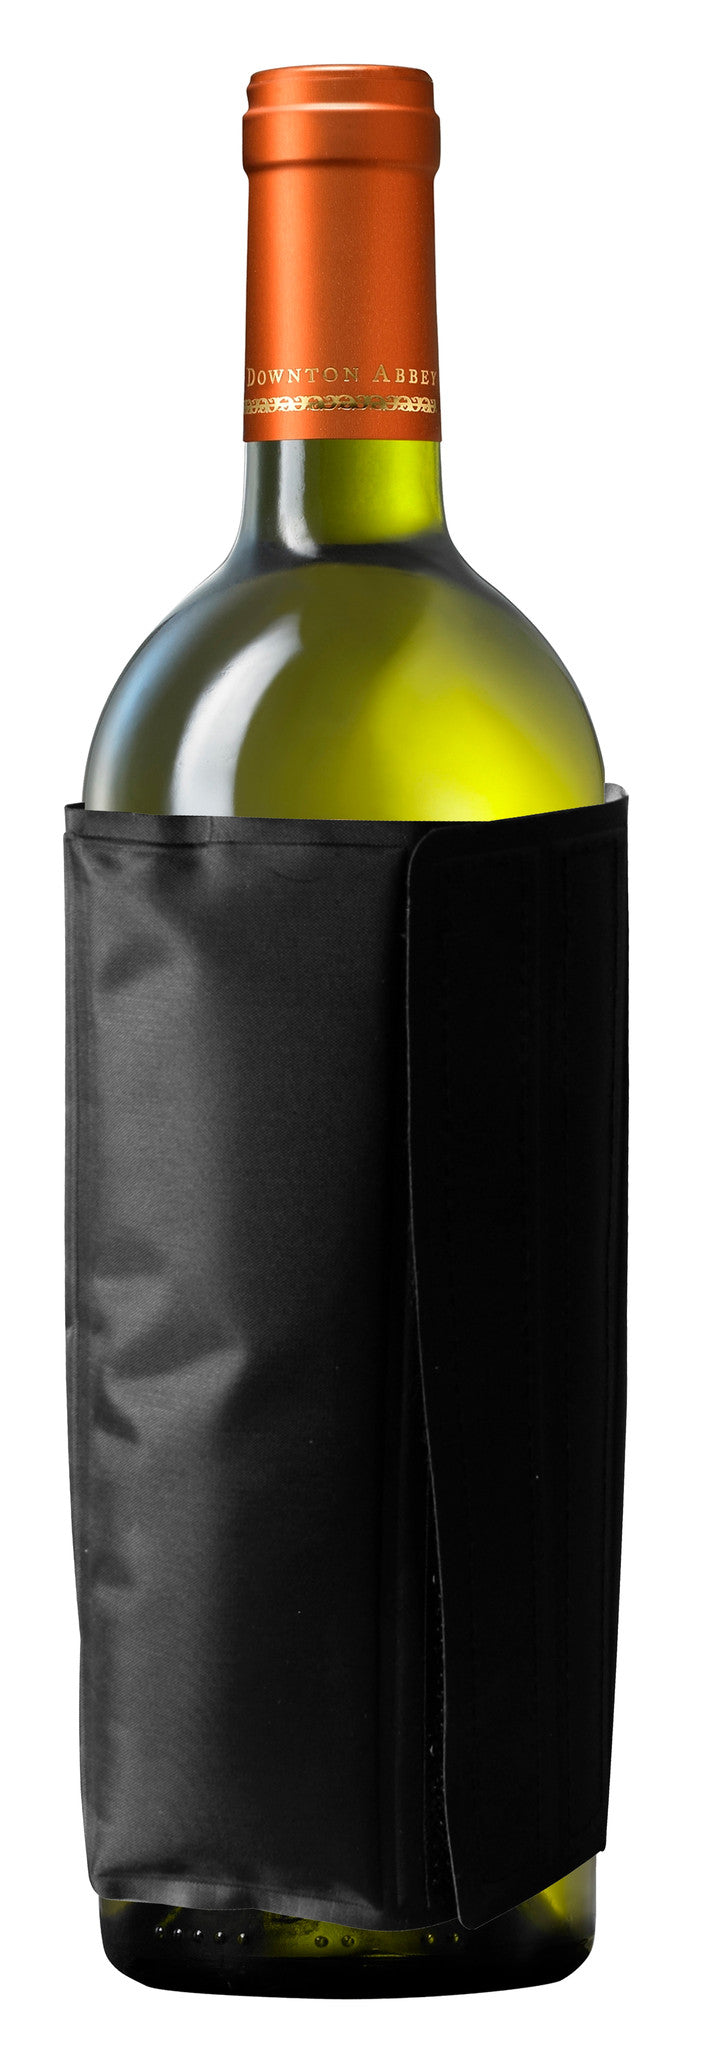 Wine bottle cooler with refrigerant gel